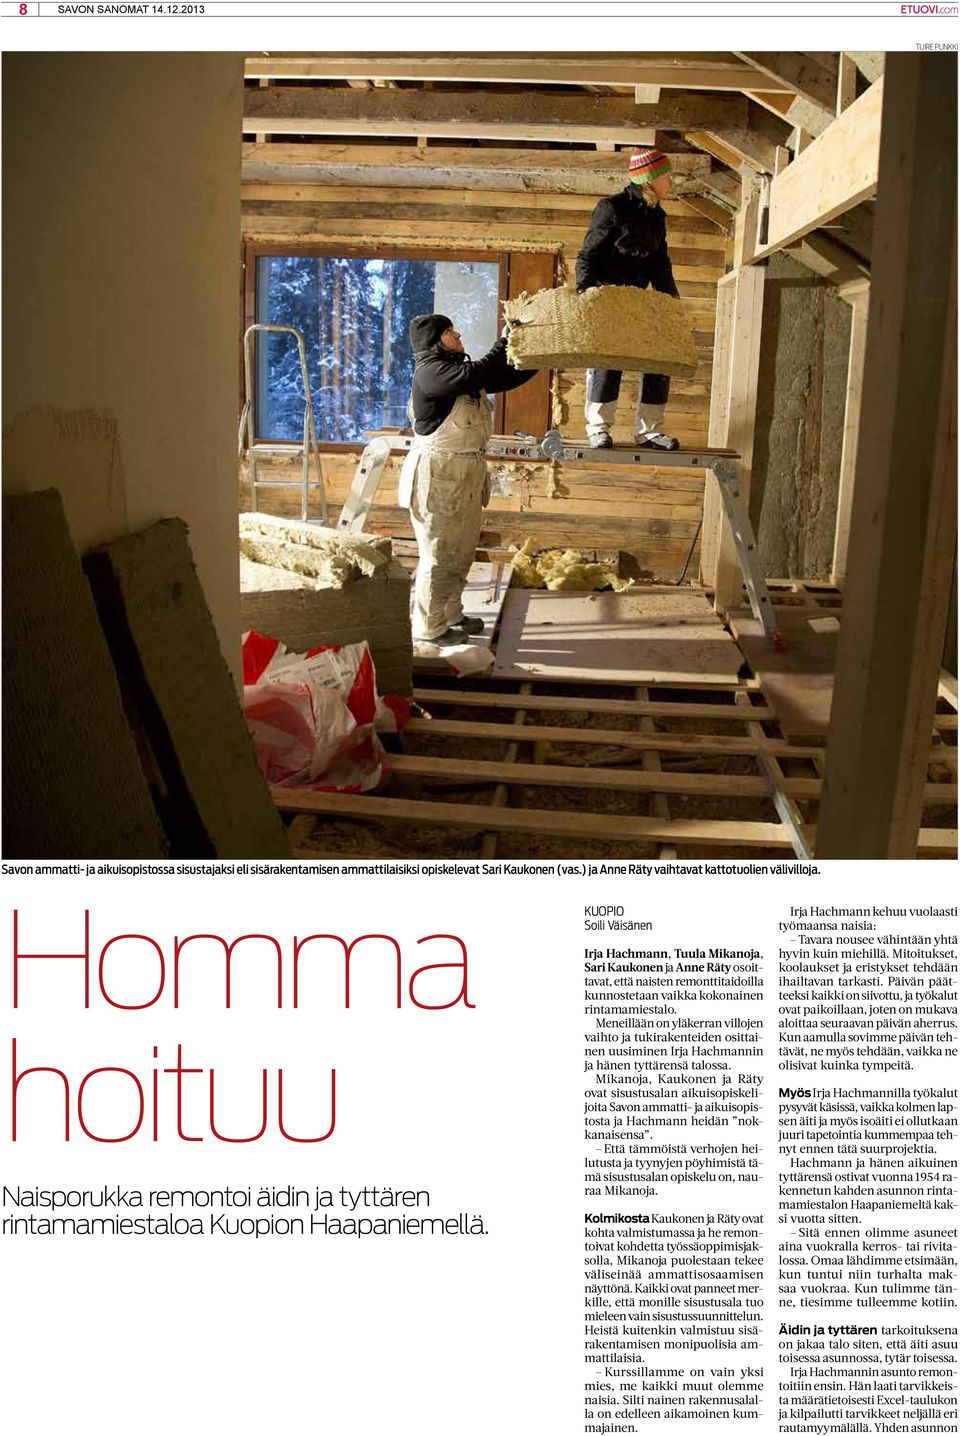 Kuopio Soili Väisänen Irja Hachmann, Tuula Mikanoja, Sari Kaukonen ja Anne Räty osoittavat, että naisten remonttitaidoilla kunnostetaan vaikka kokonainen rintamamiestalo.